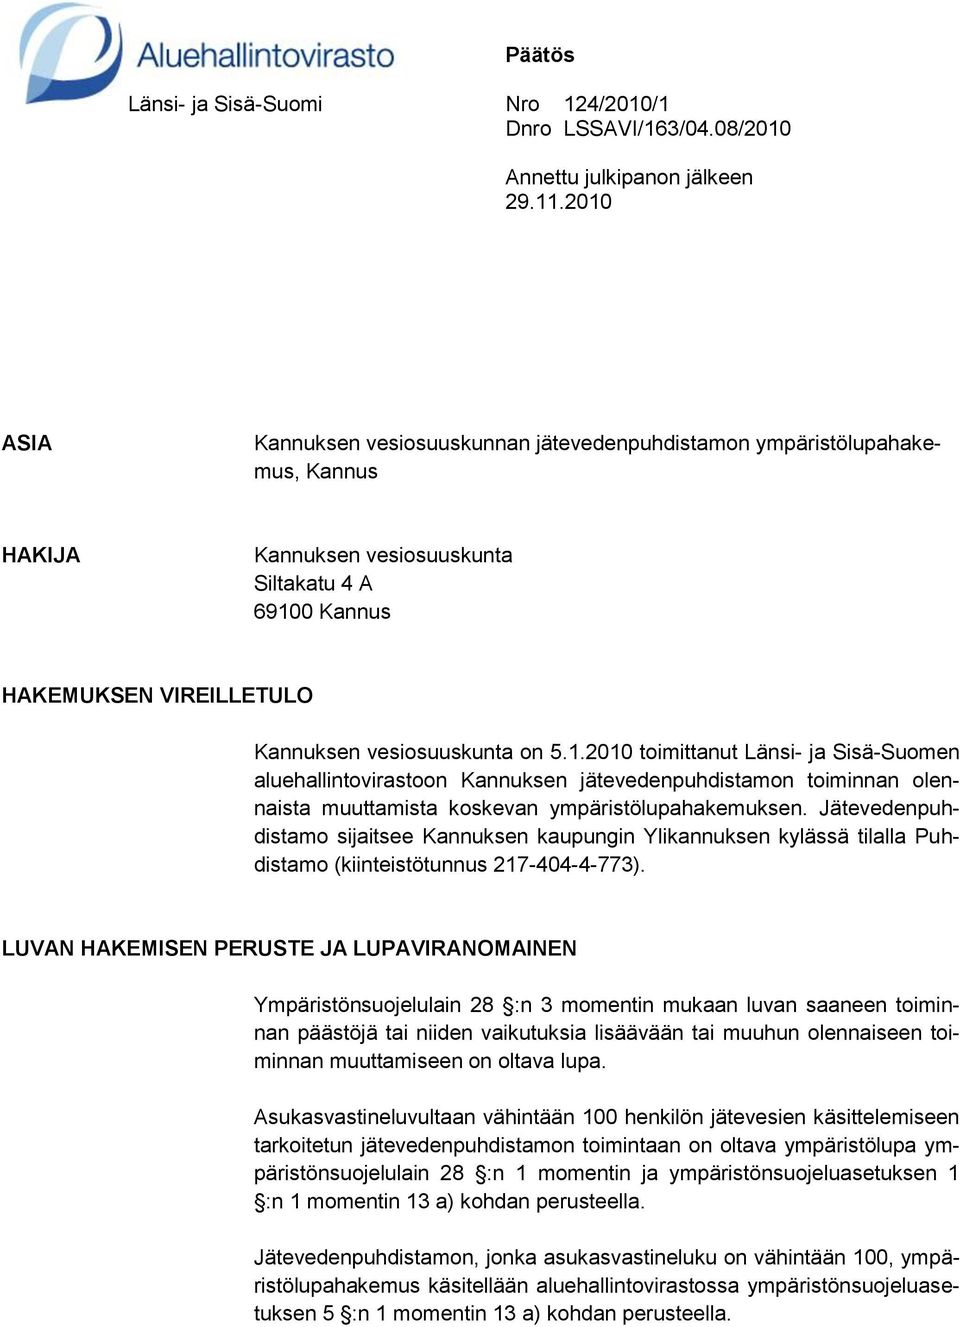 1.2010 toimittanut Länsi- ja Sisä-Suomen aluehallintovirastoon Kannuksen jätevedenpuhdistamon toiminnan olennaista muuttamista koskevan ympäristölupahakemuksen.